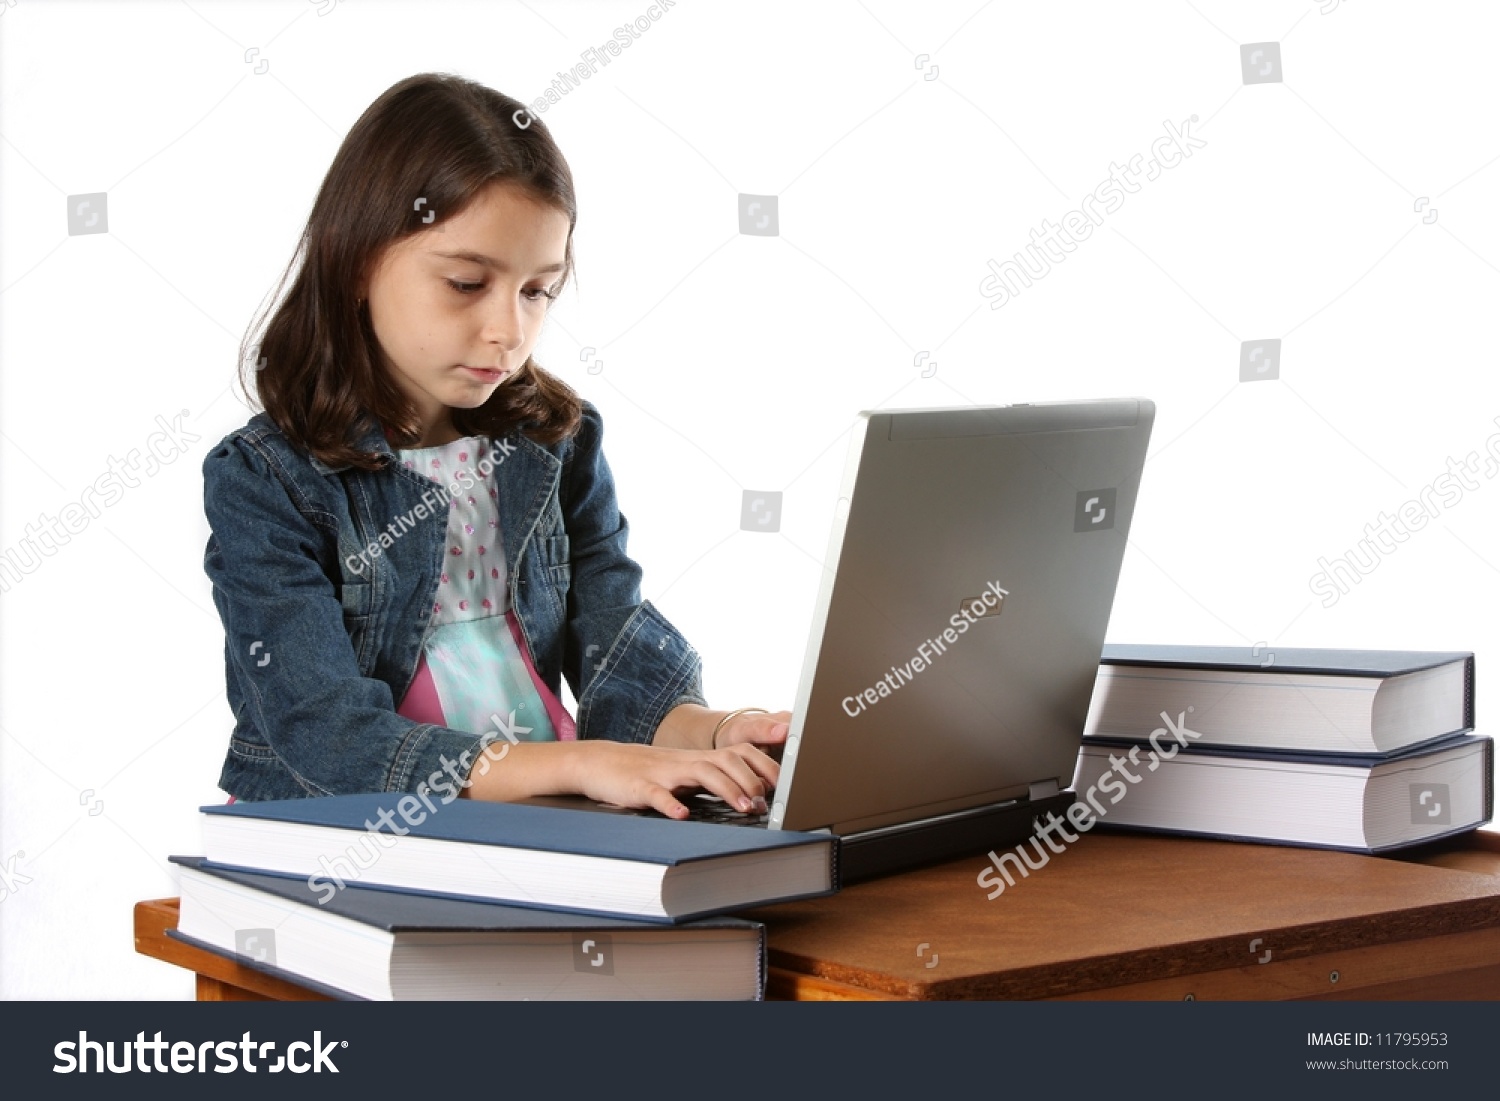 Do homework computer